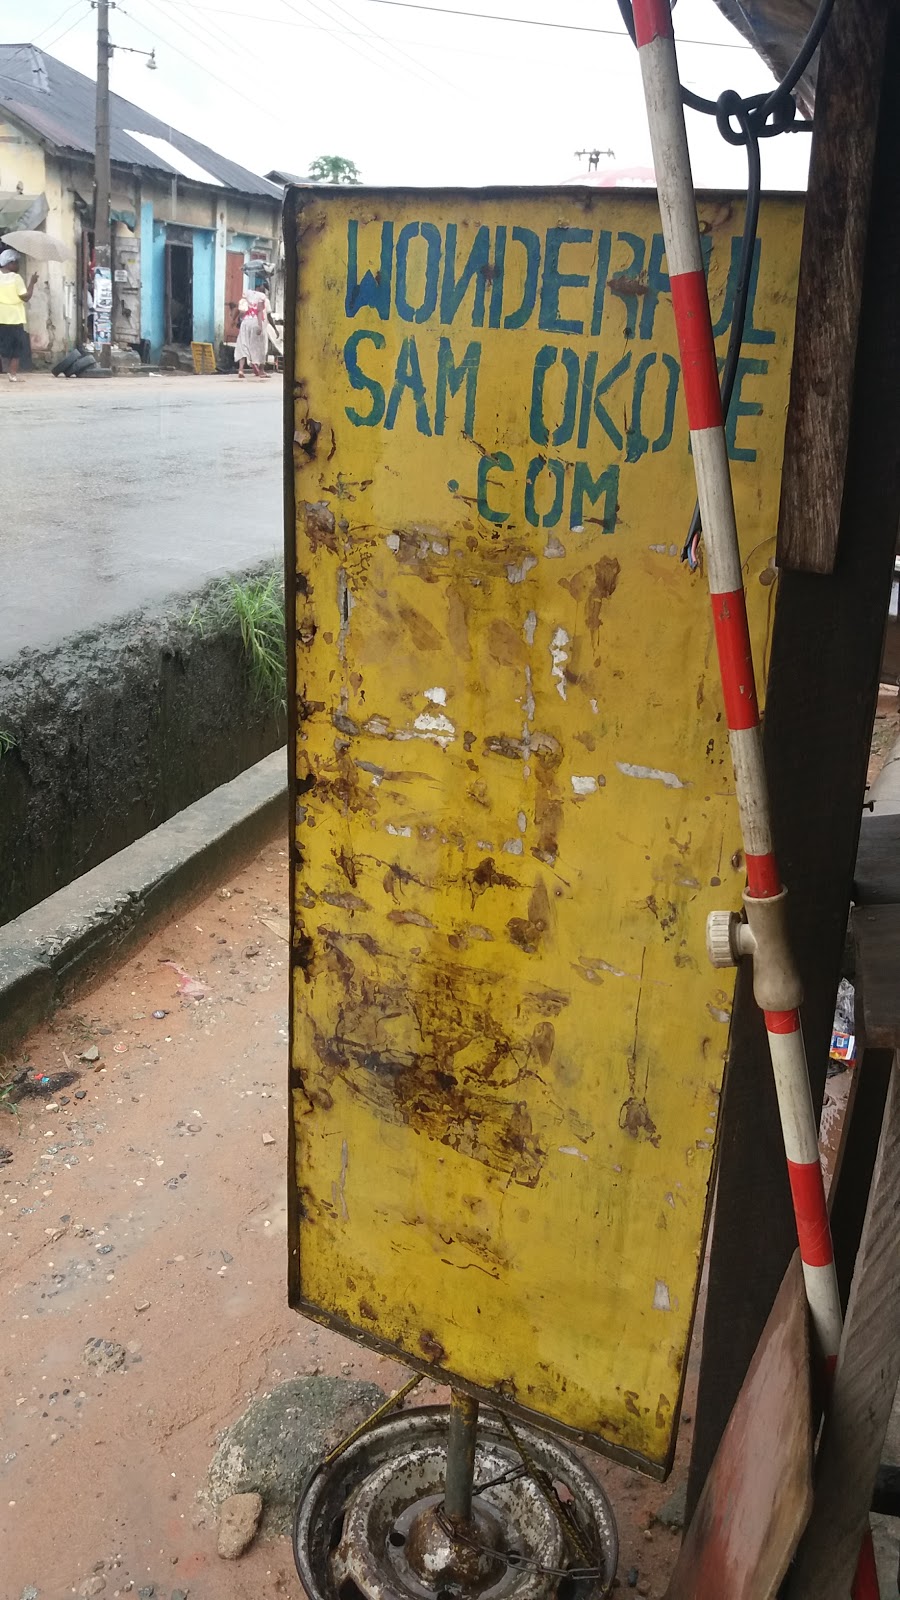 Wonderful Sam Okoye